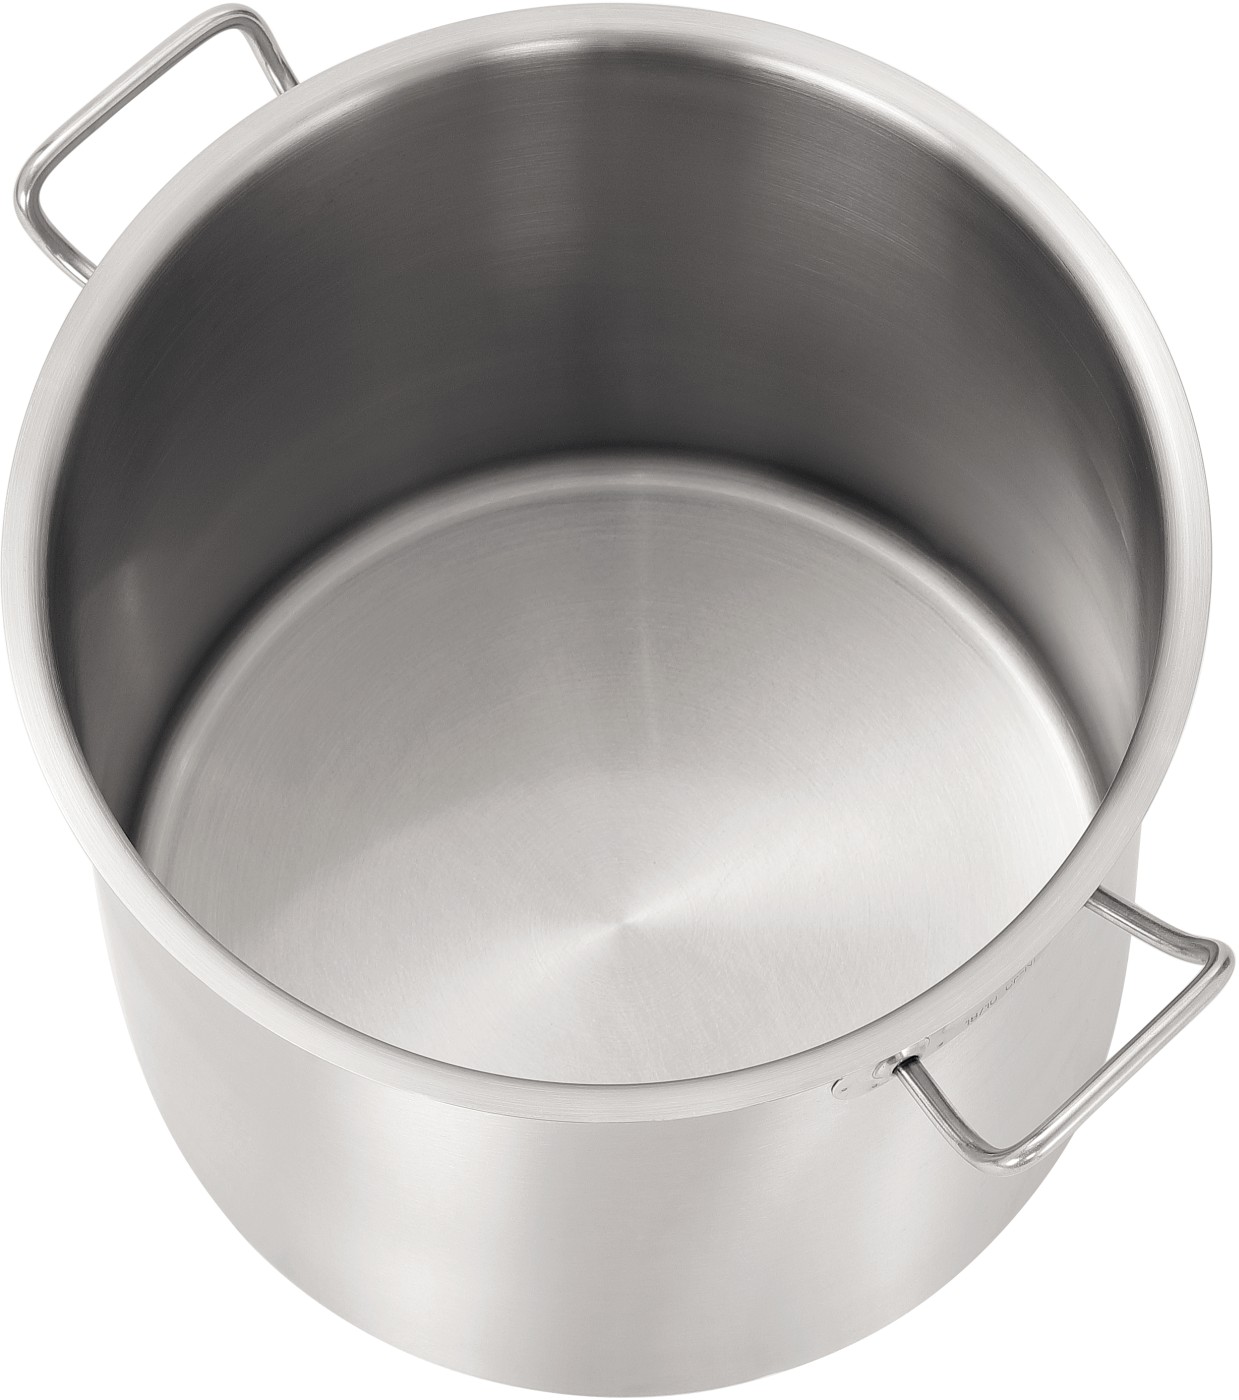  Bartscher Cooking pot 25L-D290 